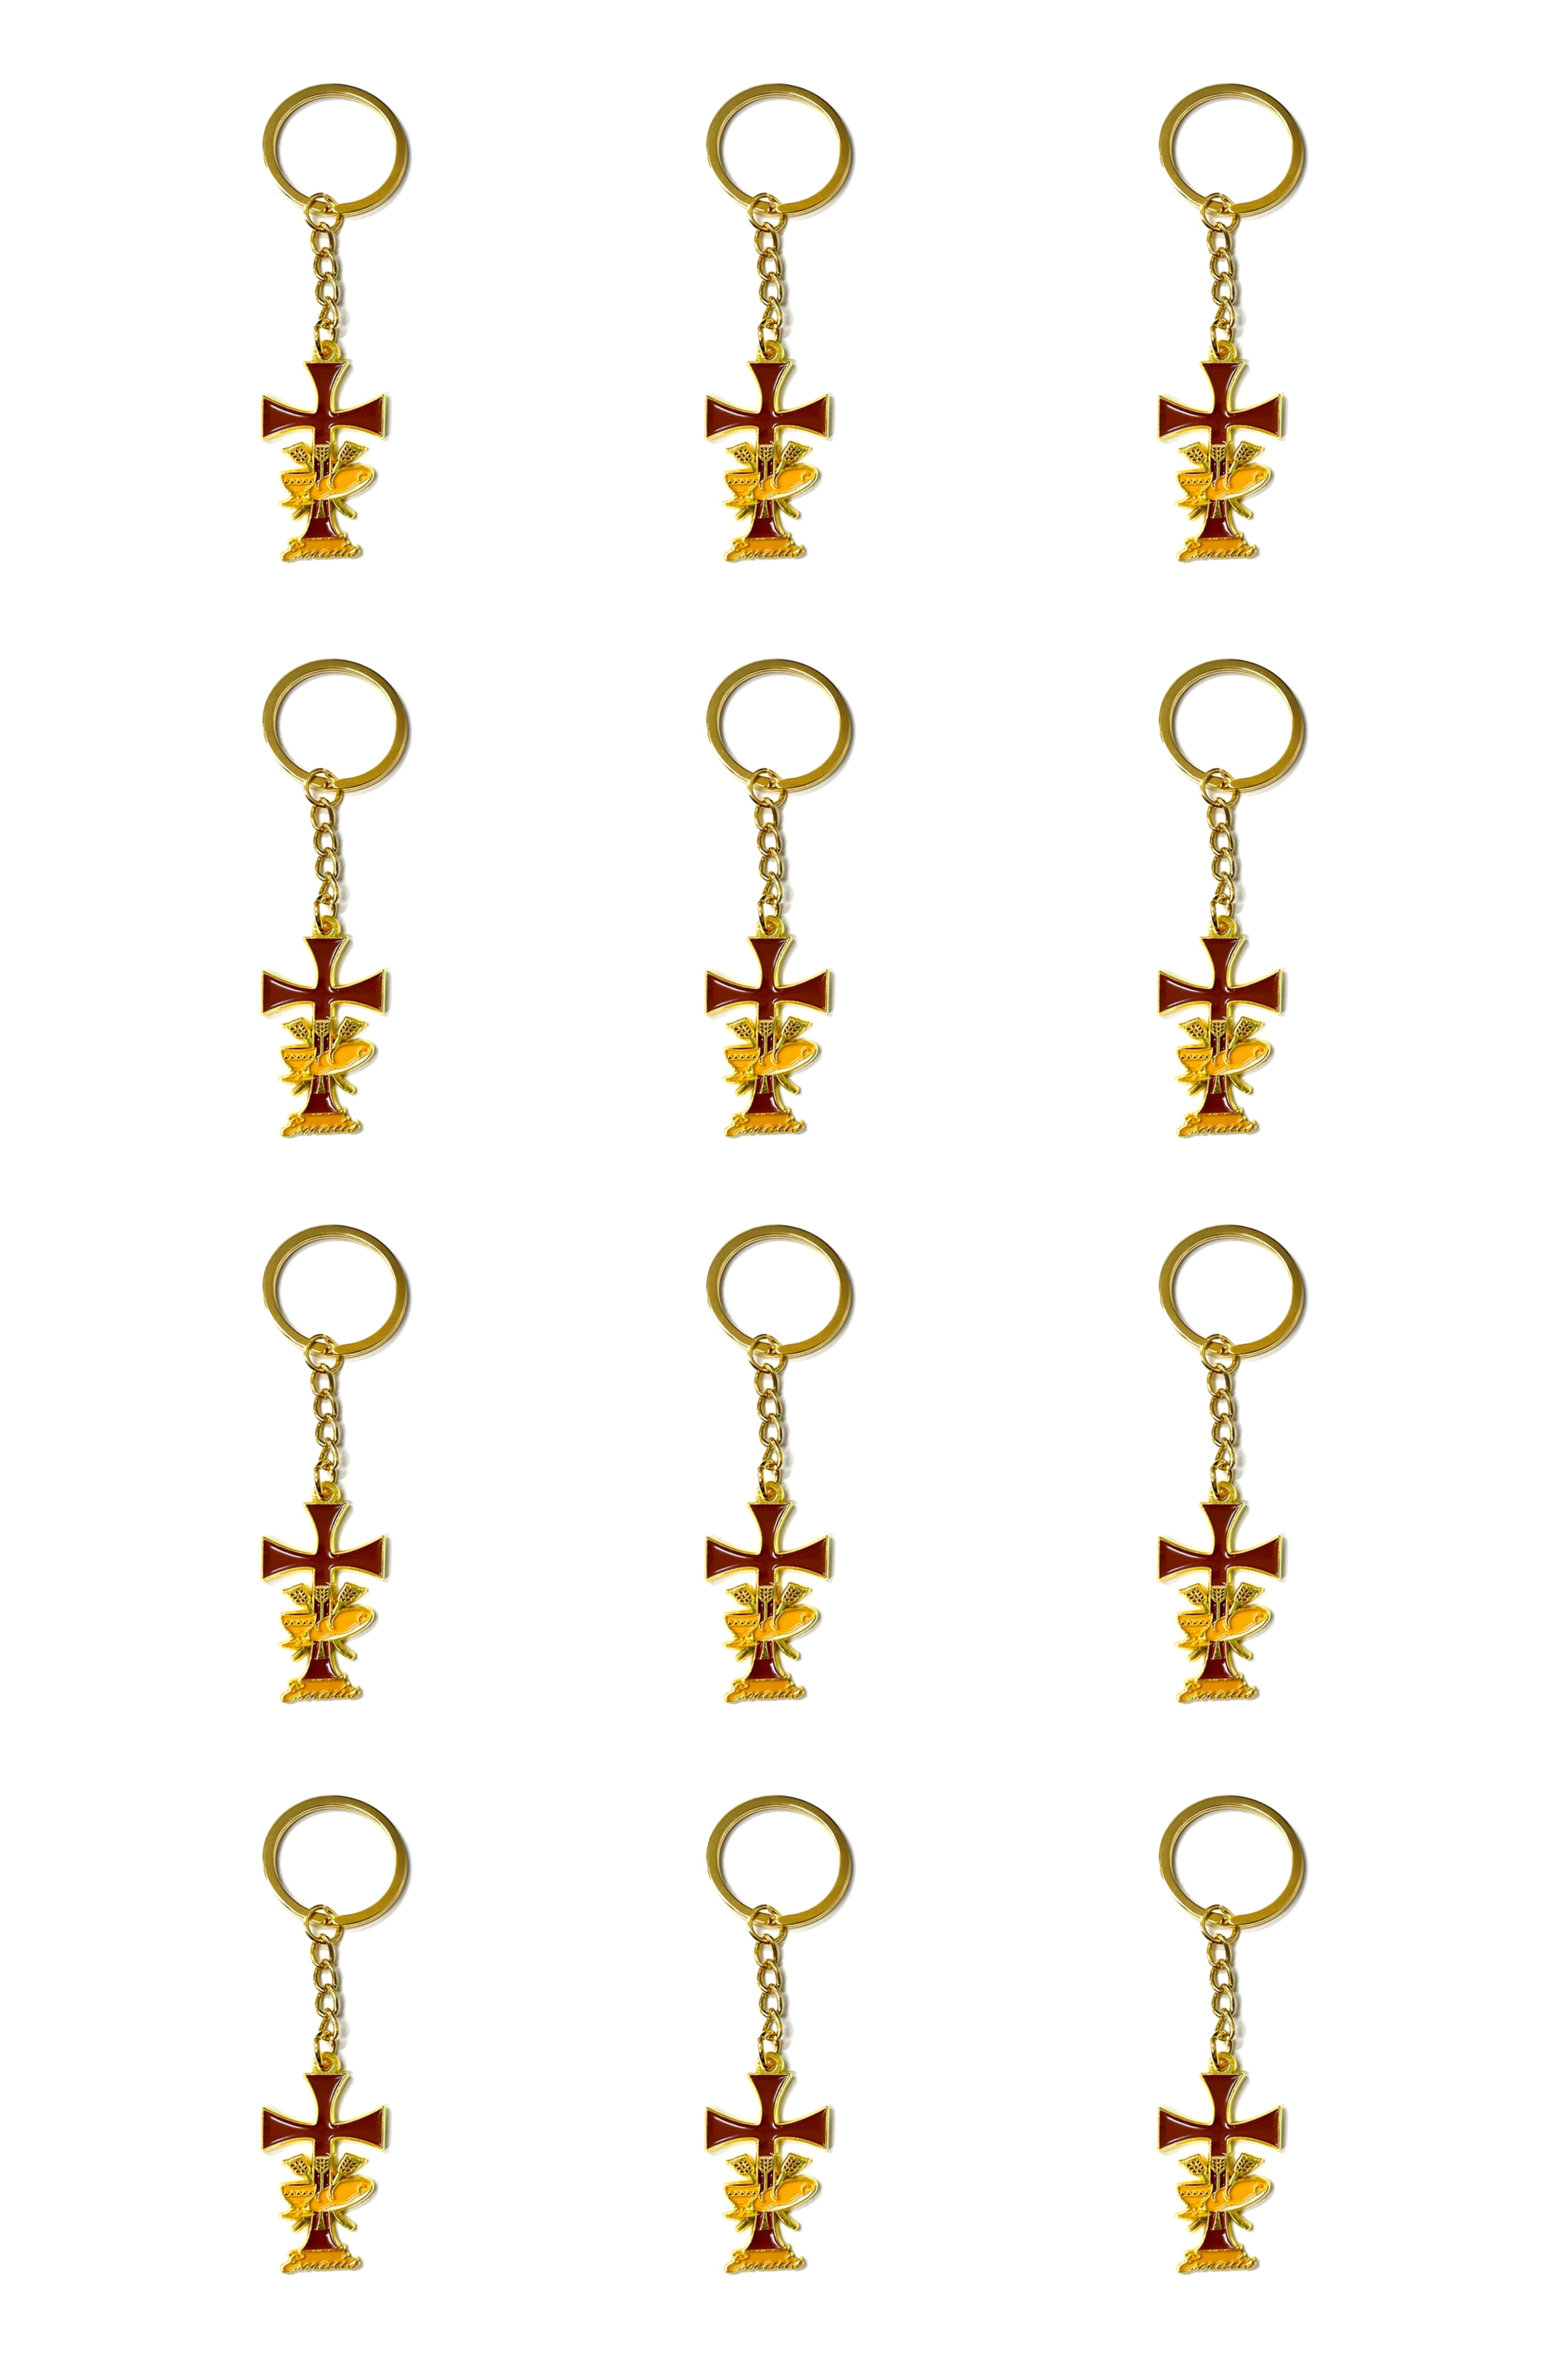 Emmaus brown keychain package of 12 units special for retreats made of golden metal - Llavero de Emaús marrón, paquete de 12 unidades especial para retiros hecho en metal dorado